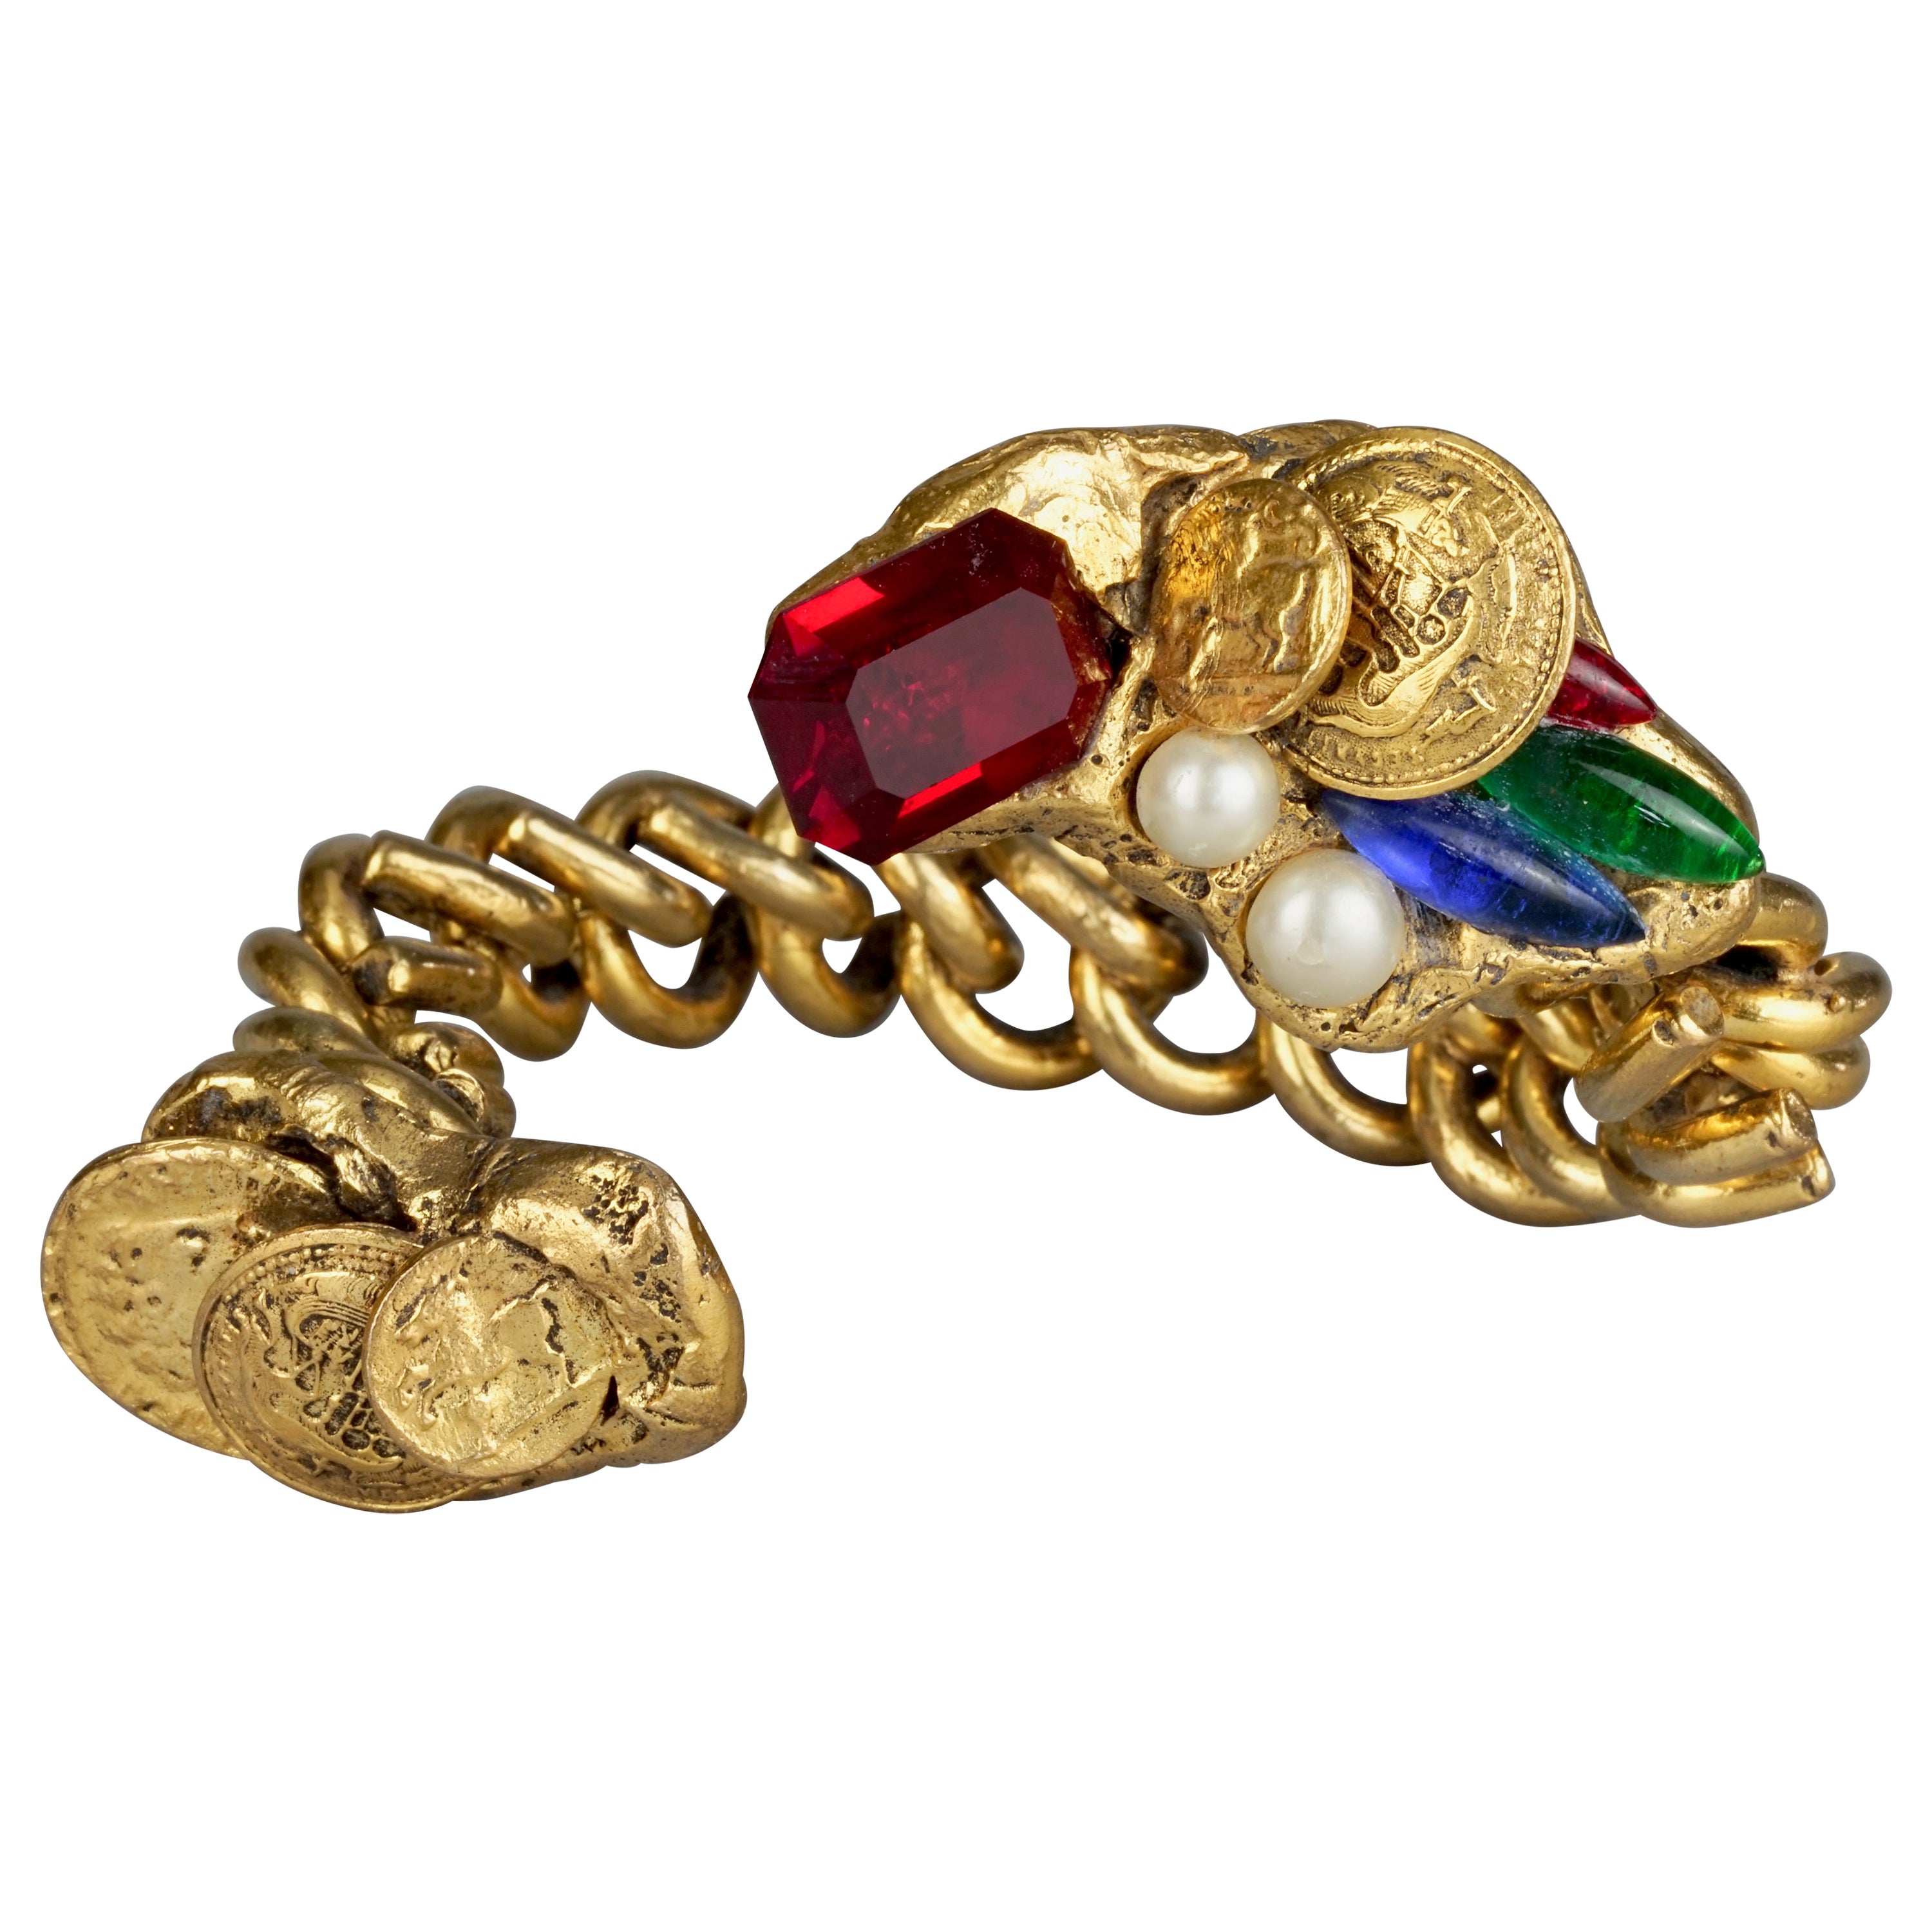 Vintage French Spiral Chain Jewelled Embellished Rigid Bracelet